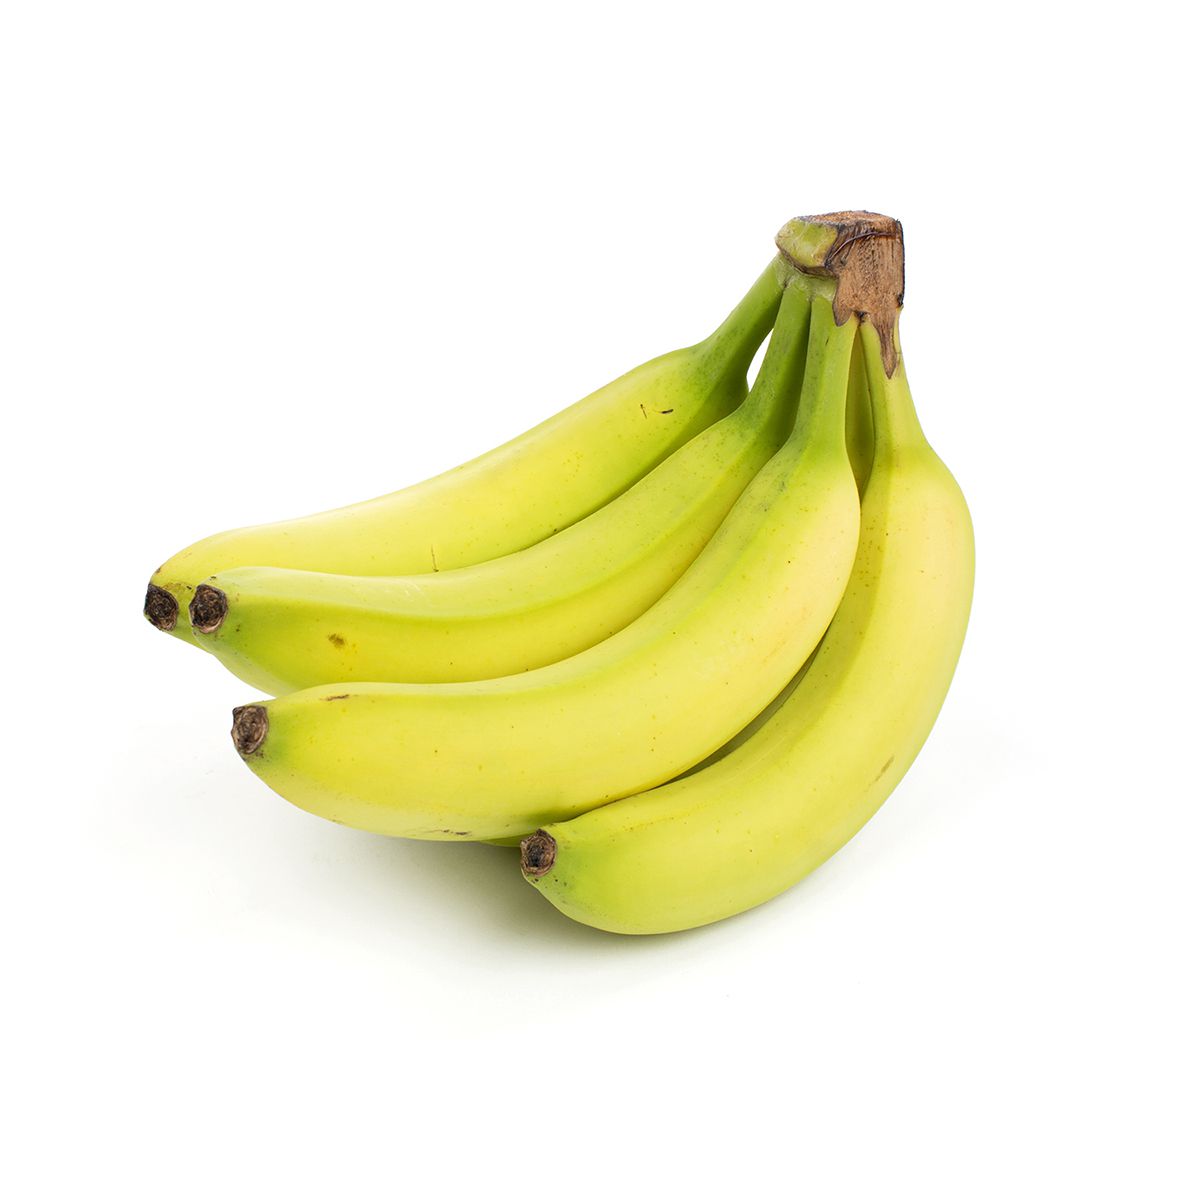 BoxNCase Organic Bananas Two Days Away